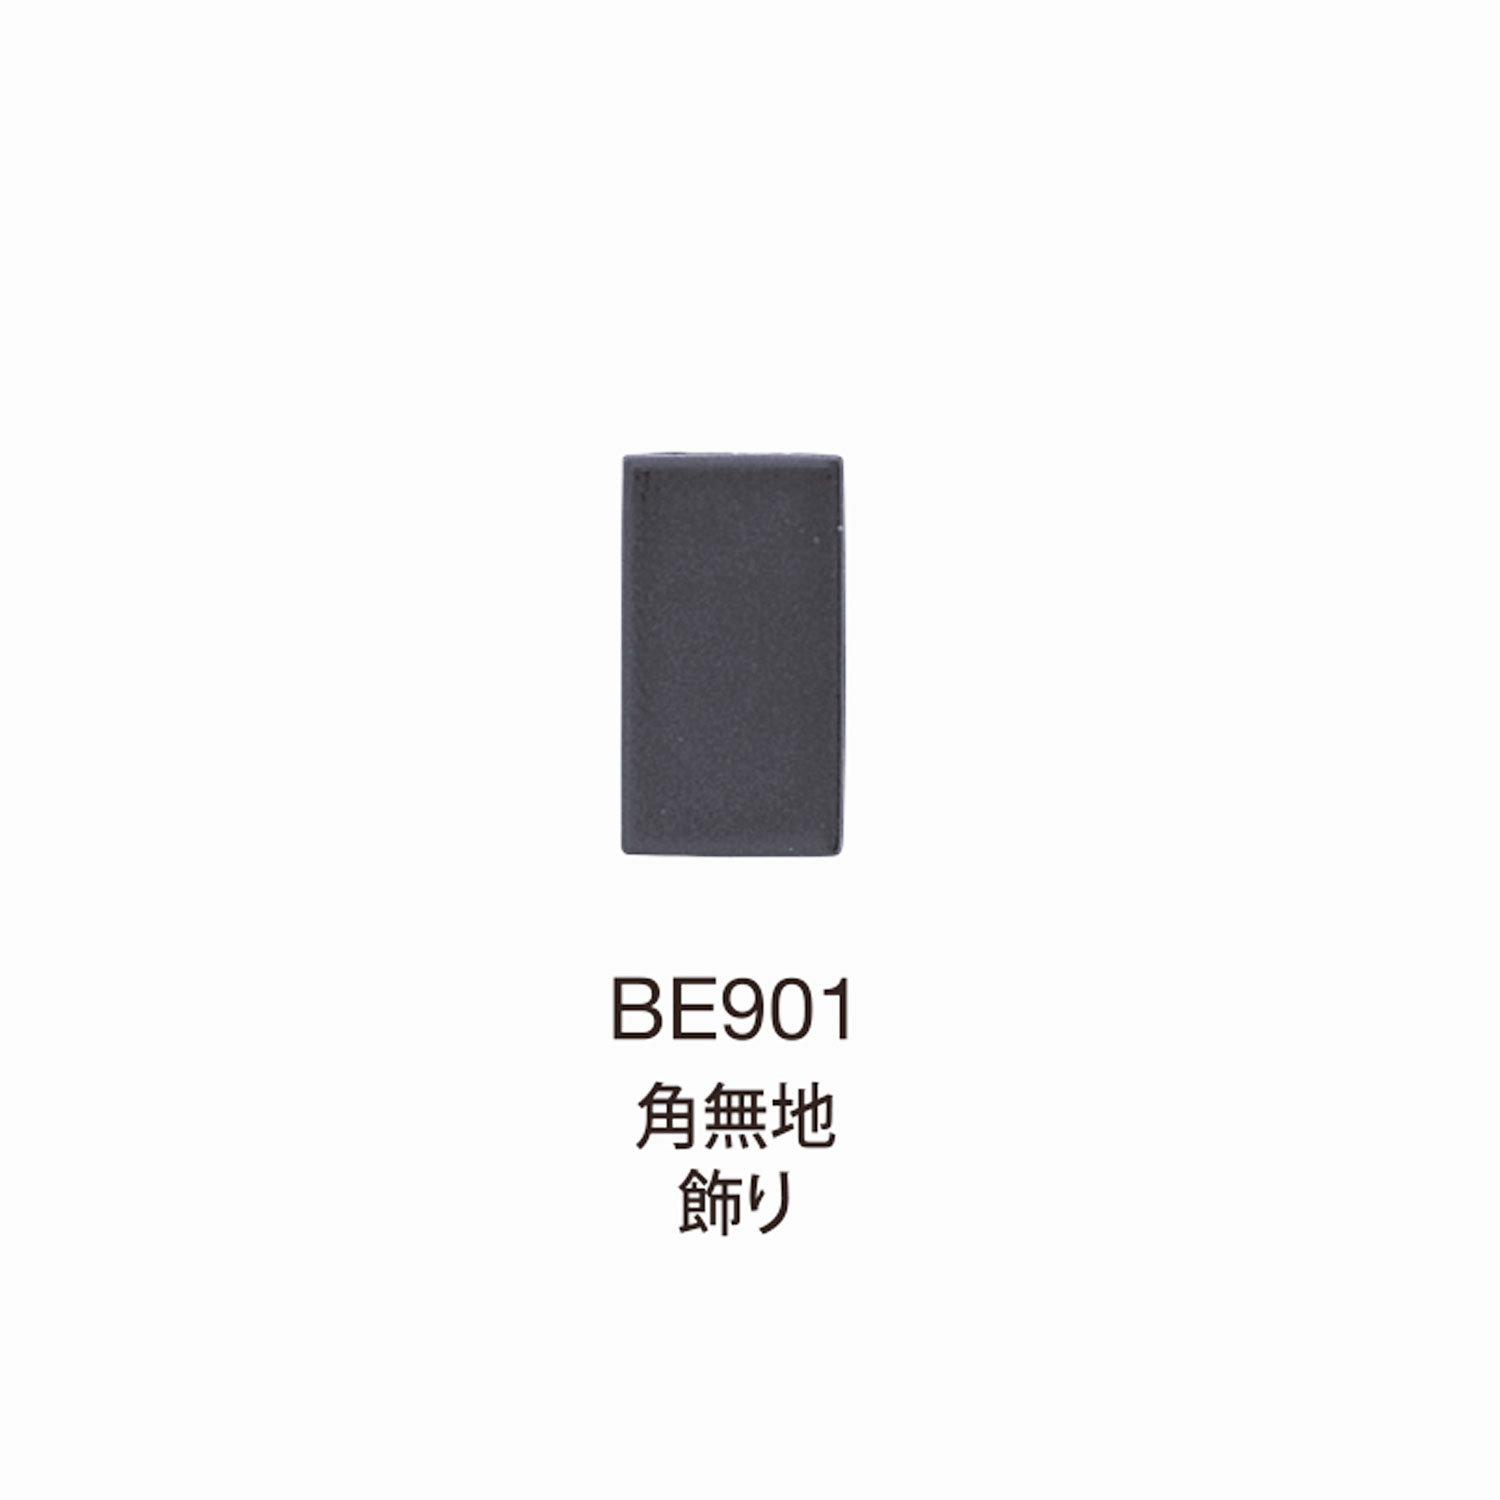 BE901 BEREX α Top Hardware Corner Sin Decoración De Patrón[Hebillas Y Anillo] Morito